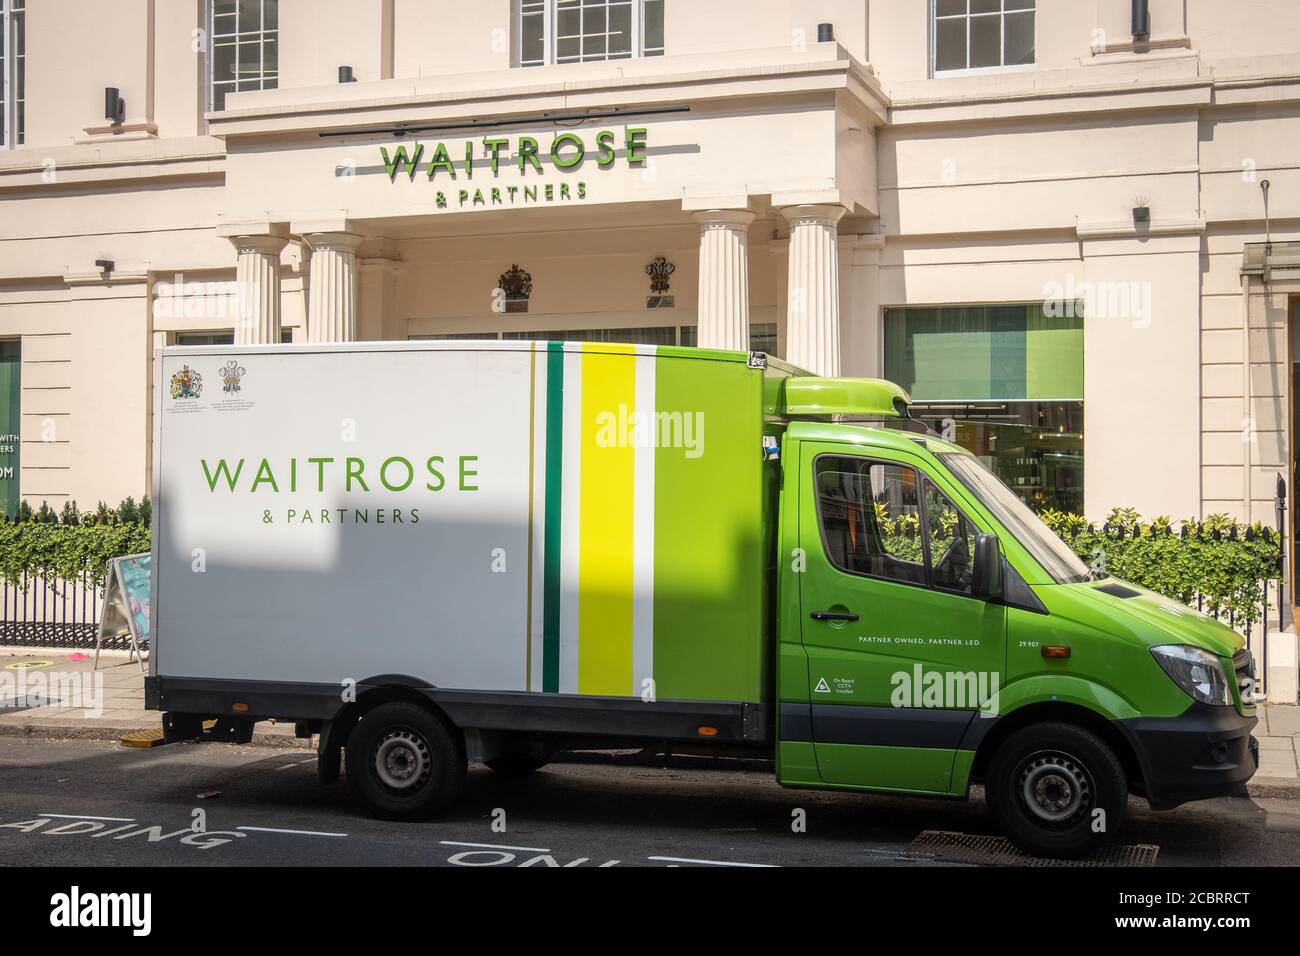 Waitrose supermarché et camion de livraison, un supermarché britannique haut de gamme avec commande et livraison en ligne Banque D'Images